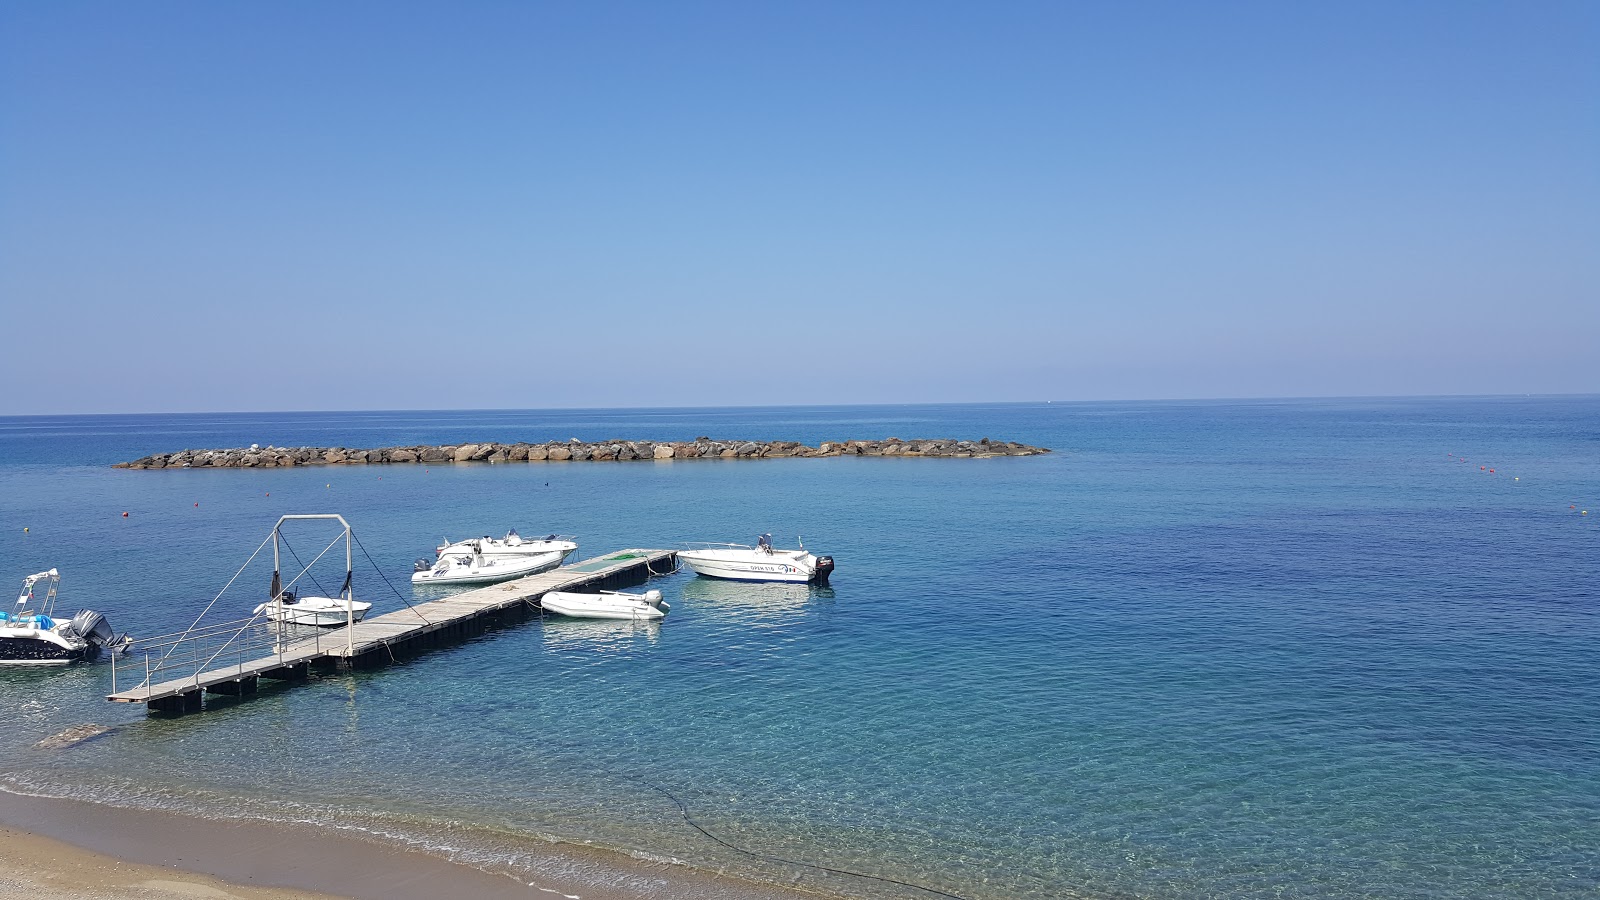 Spiaggia Diamante'in fotoğrafı kahverengi kum yüzey ile